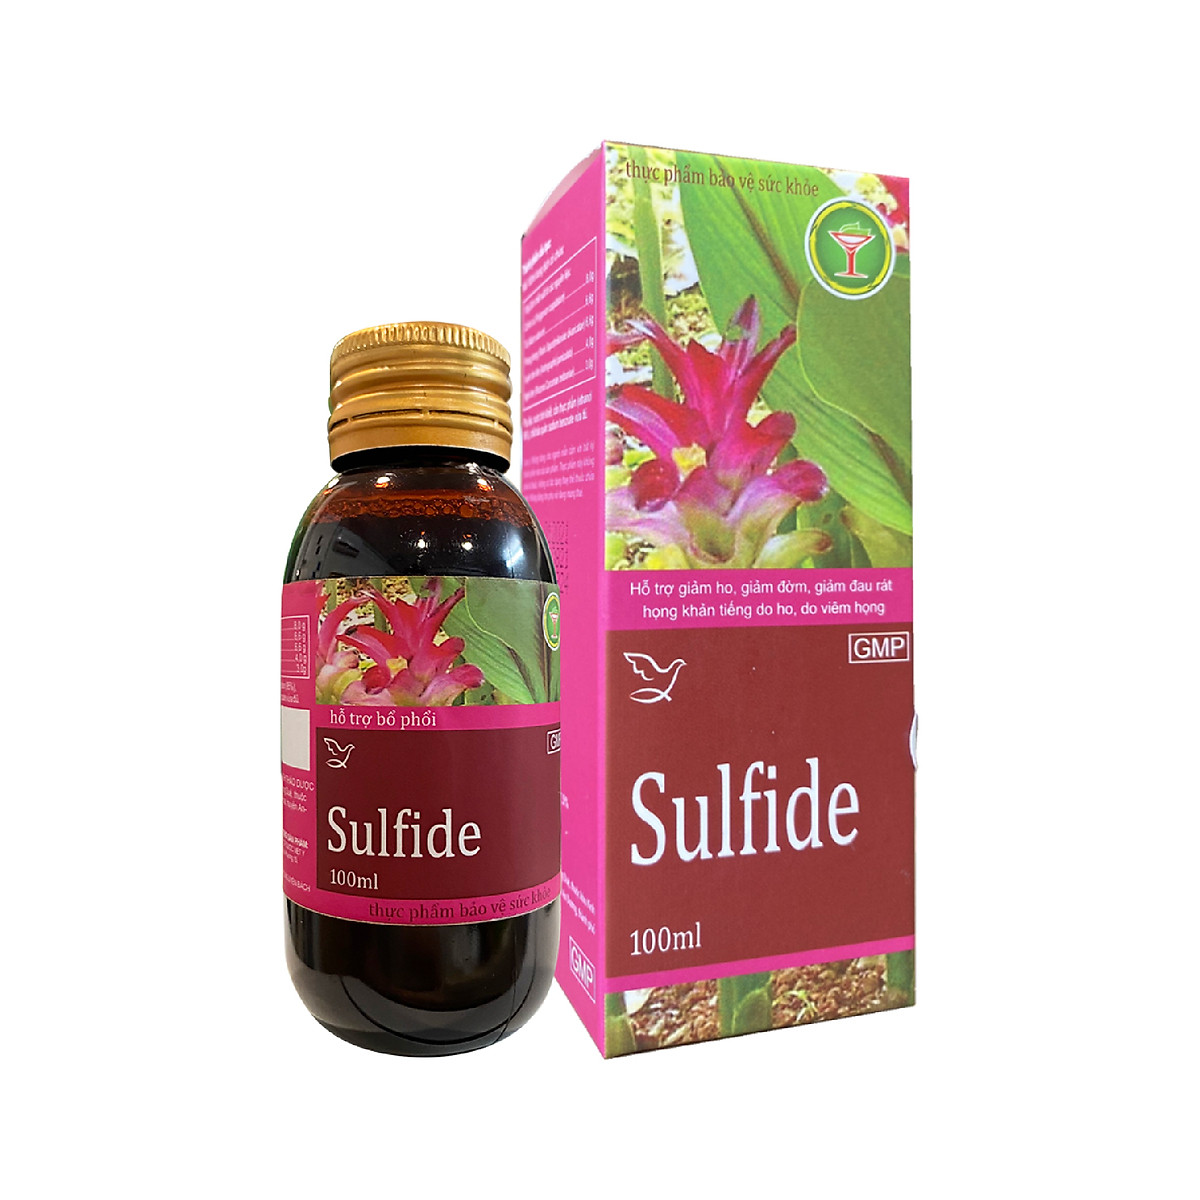 Những đối tượng nào nên hạn chế sử dụng thuốc sulfide?
